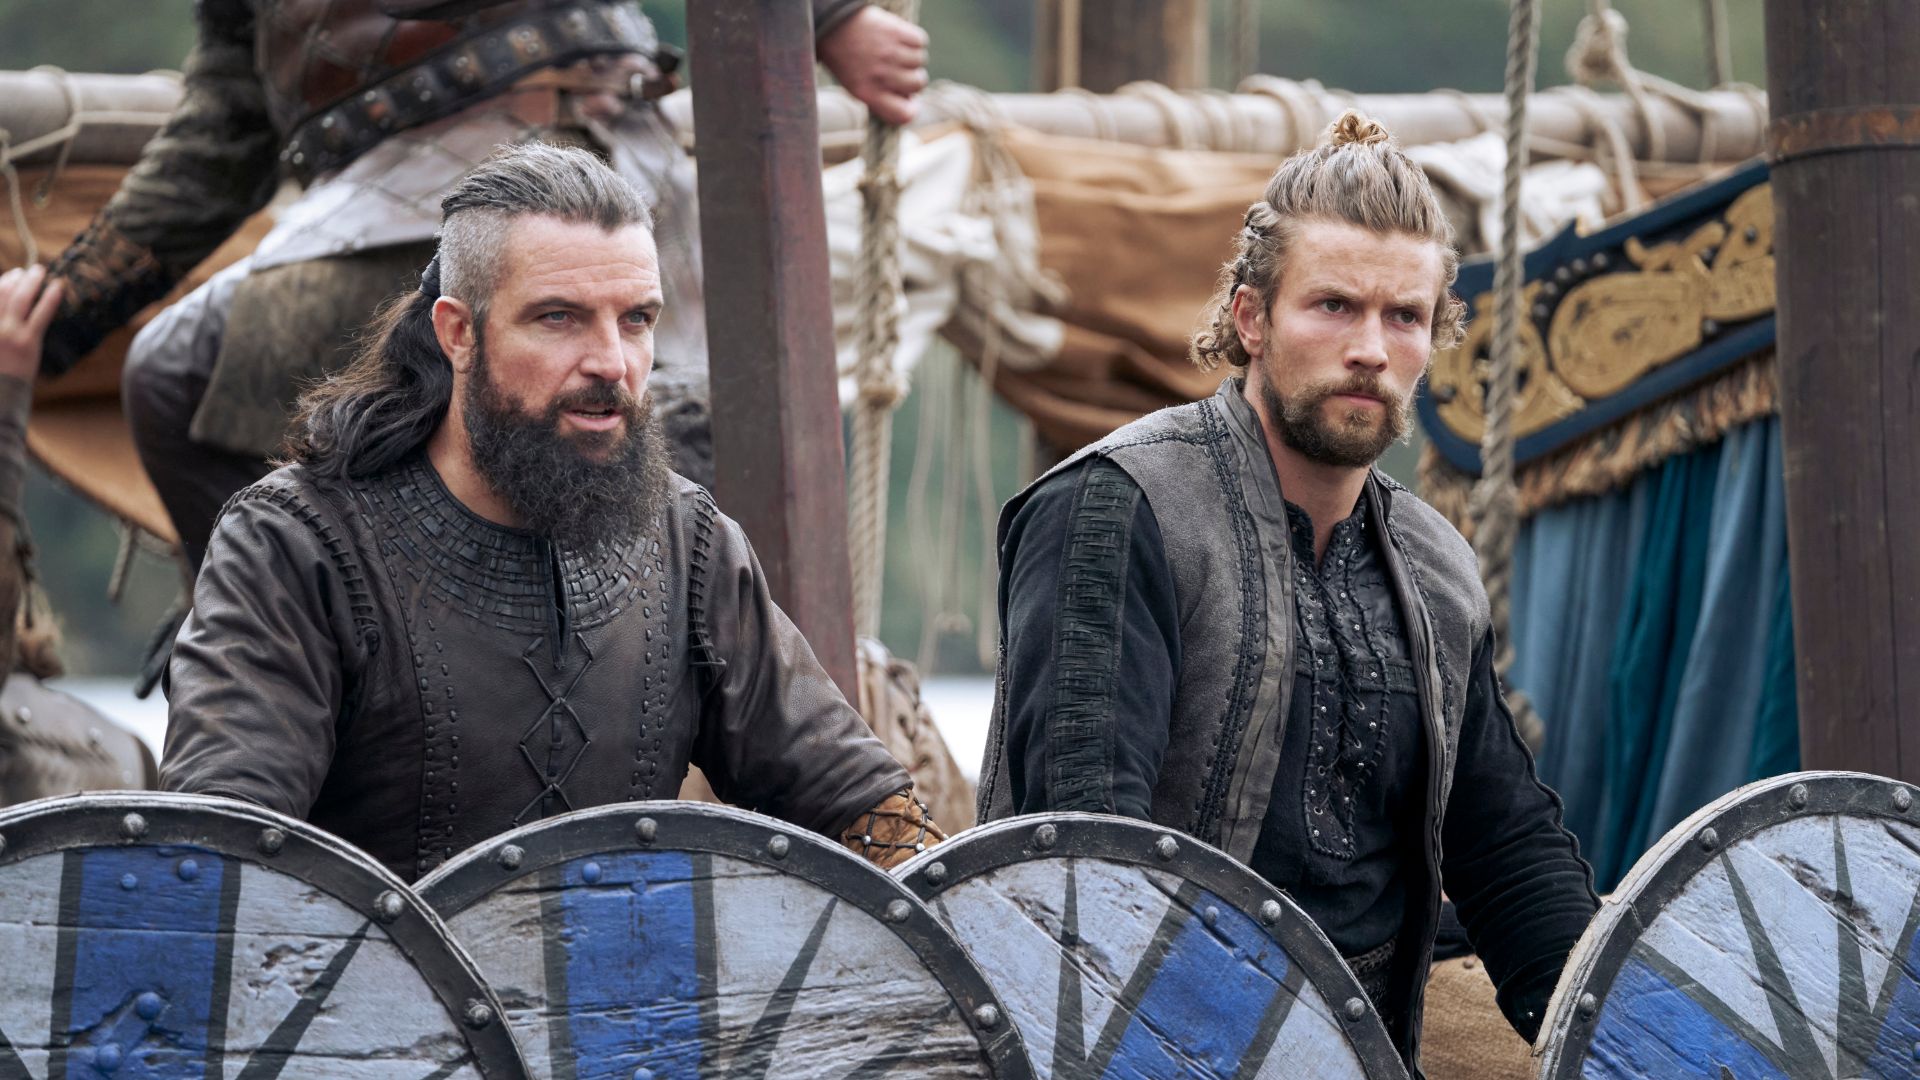 Série Vikings - Valhalla é spin-off da popular série com Ragnar